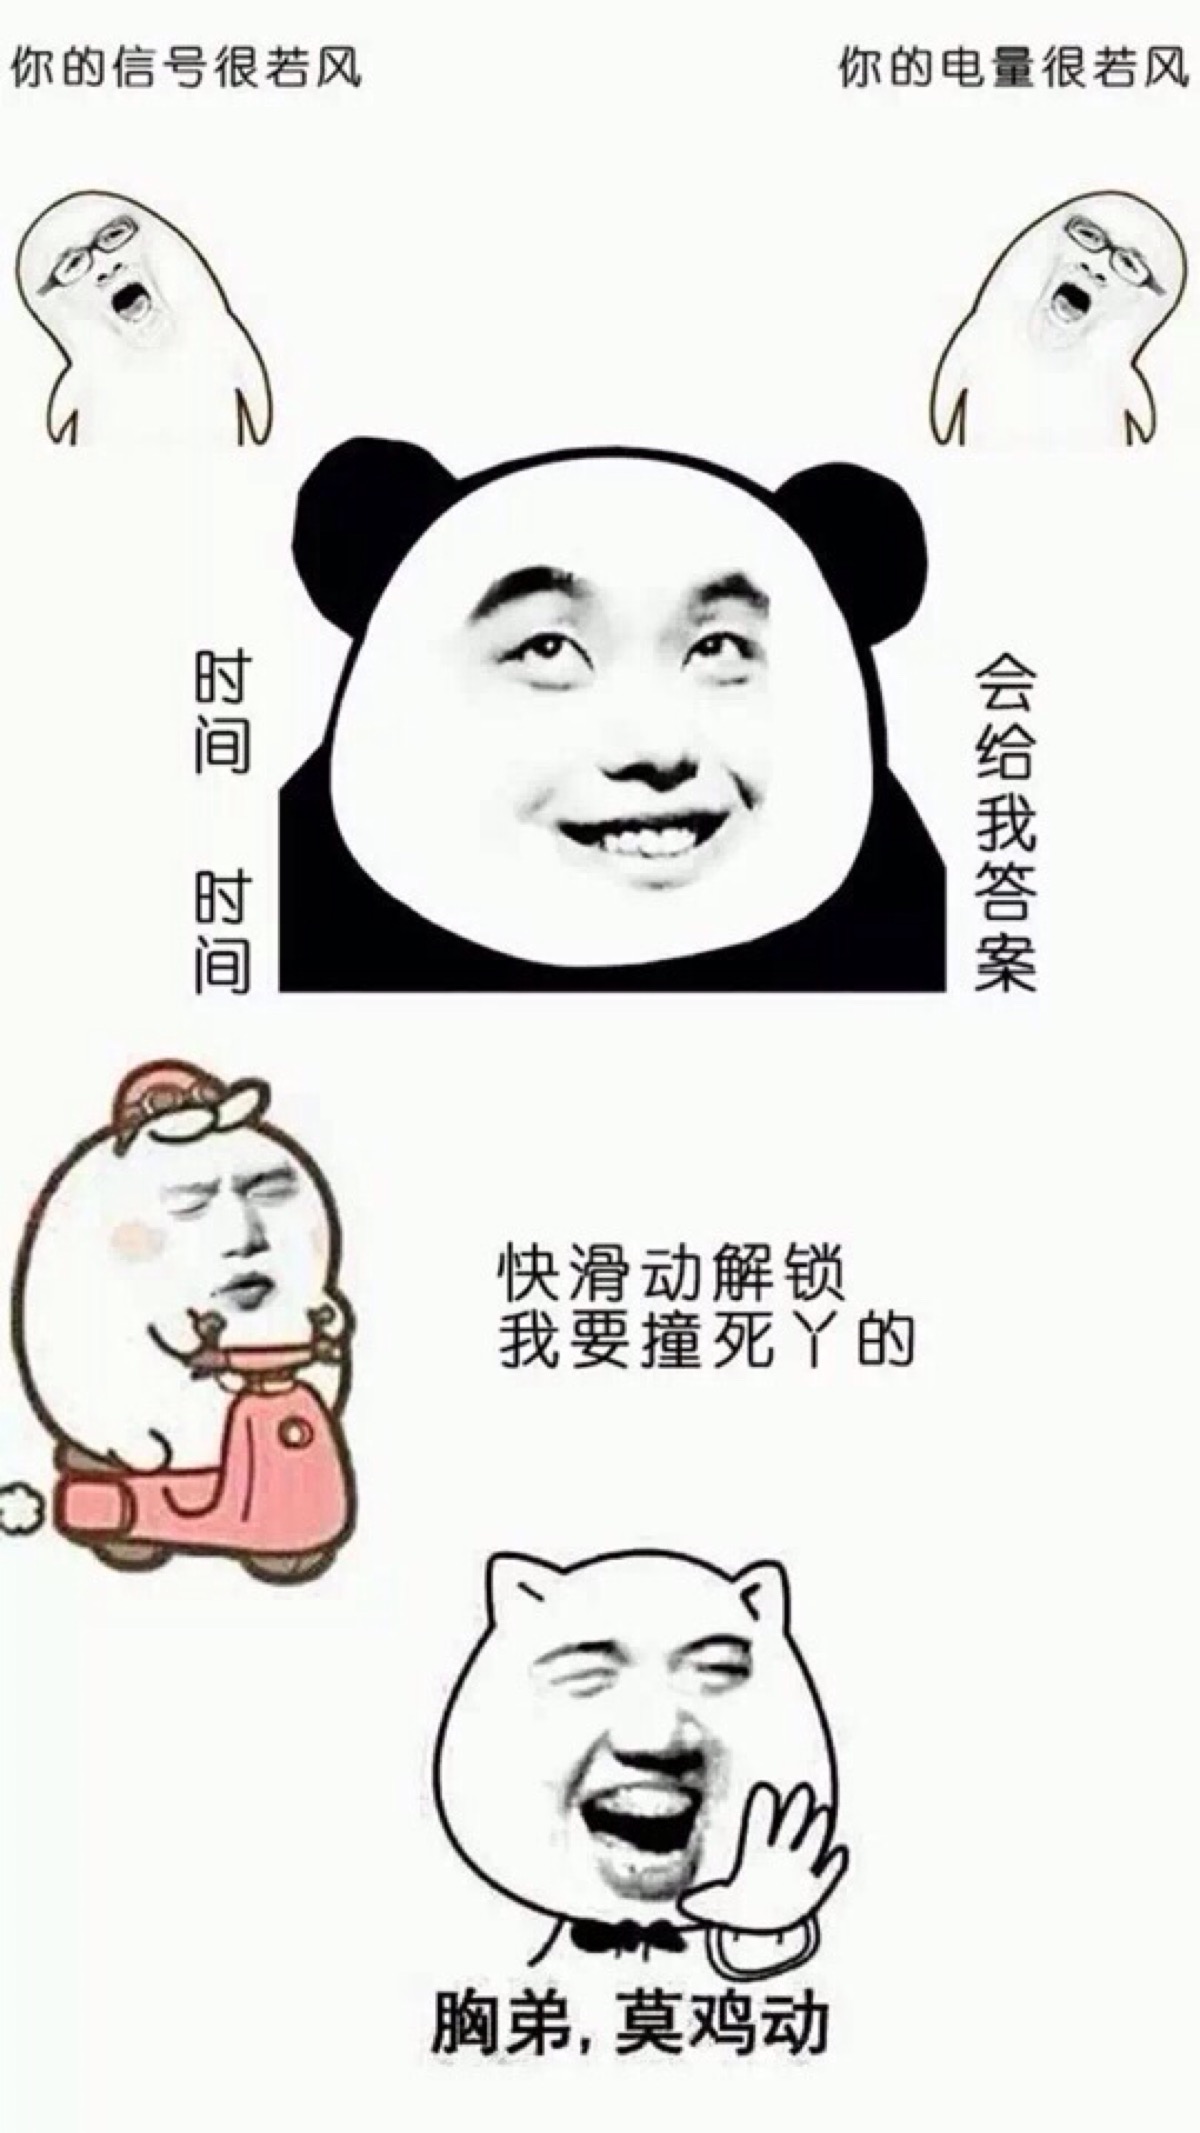 可爱又搞笑的西直门三太子萌兰大熊猫表情包图片15张_配图网